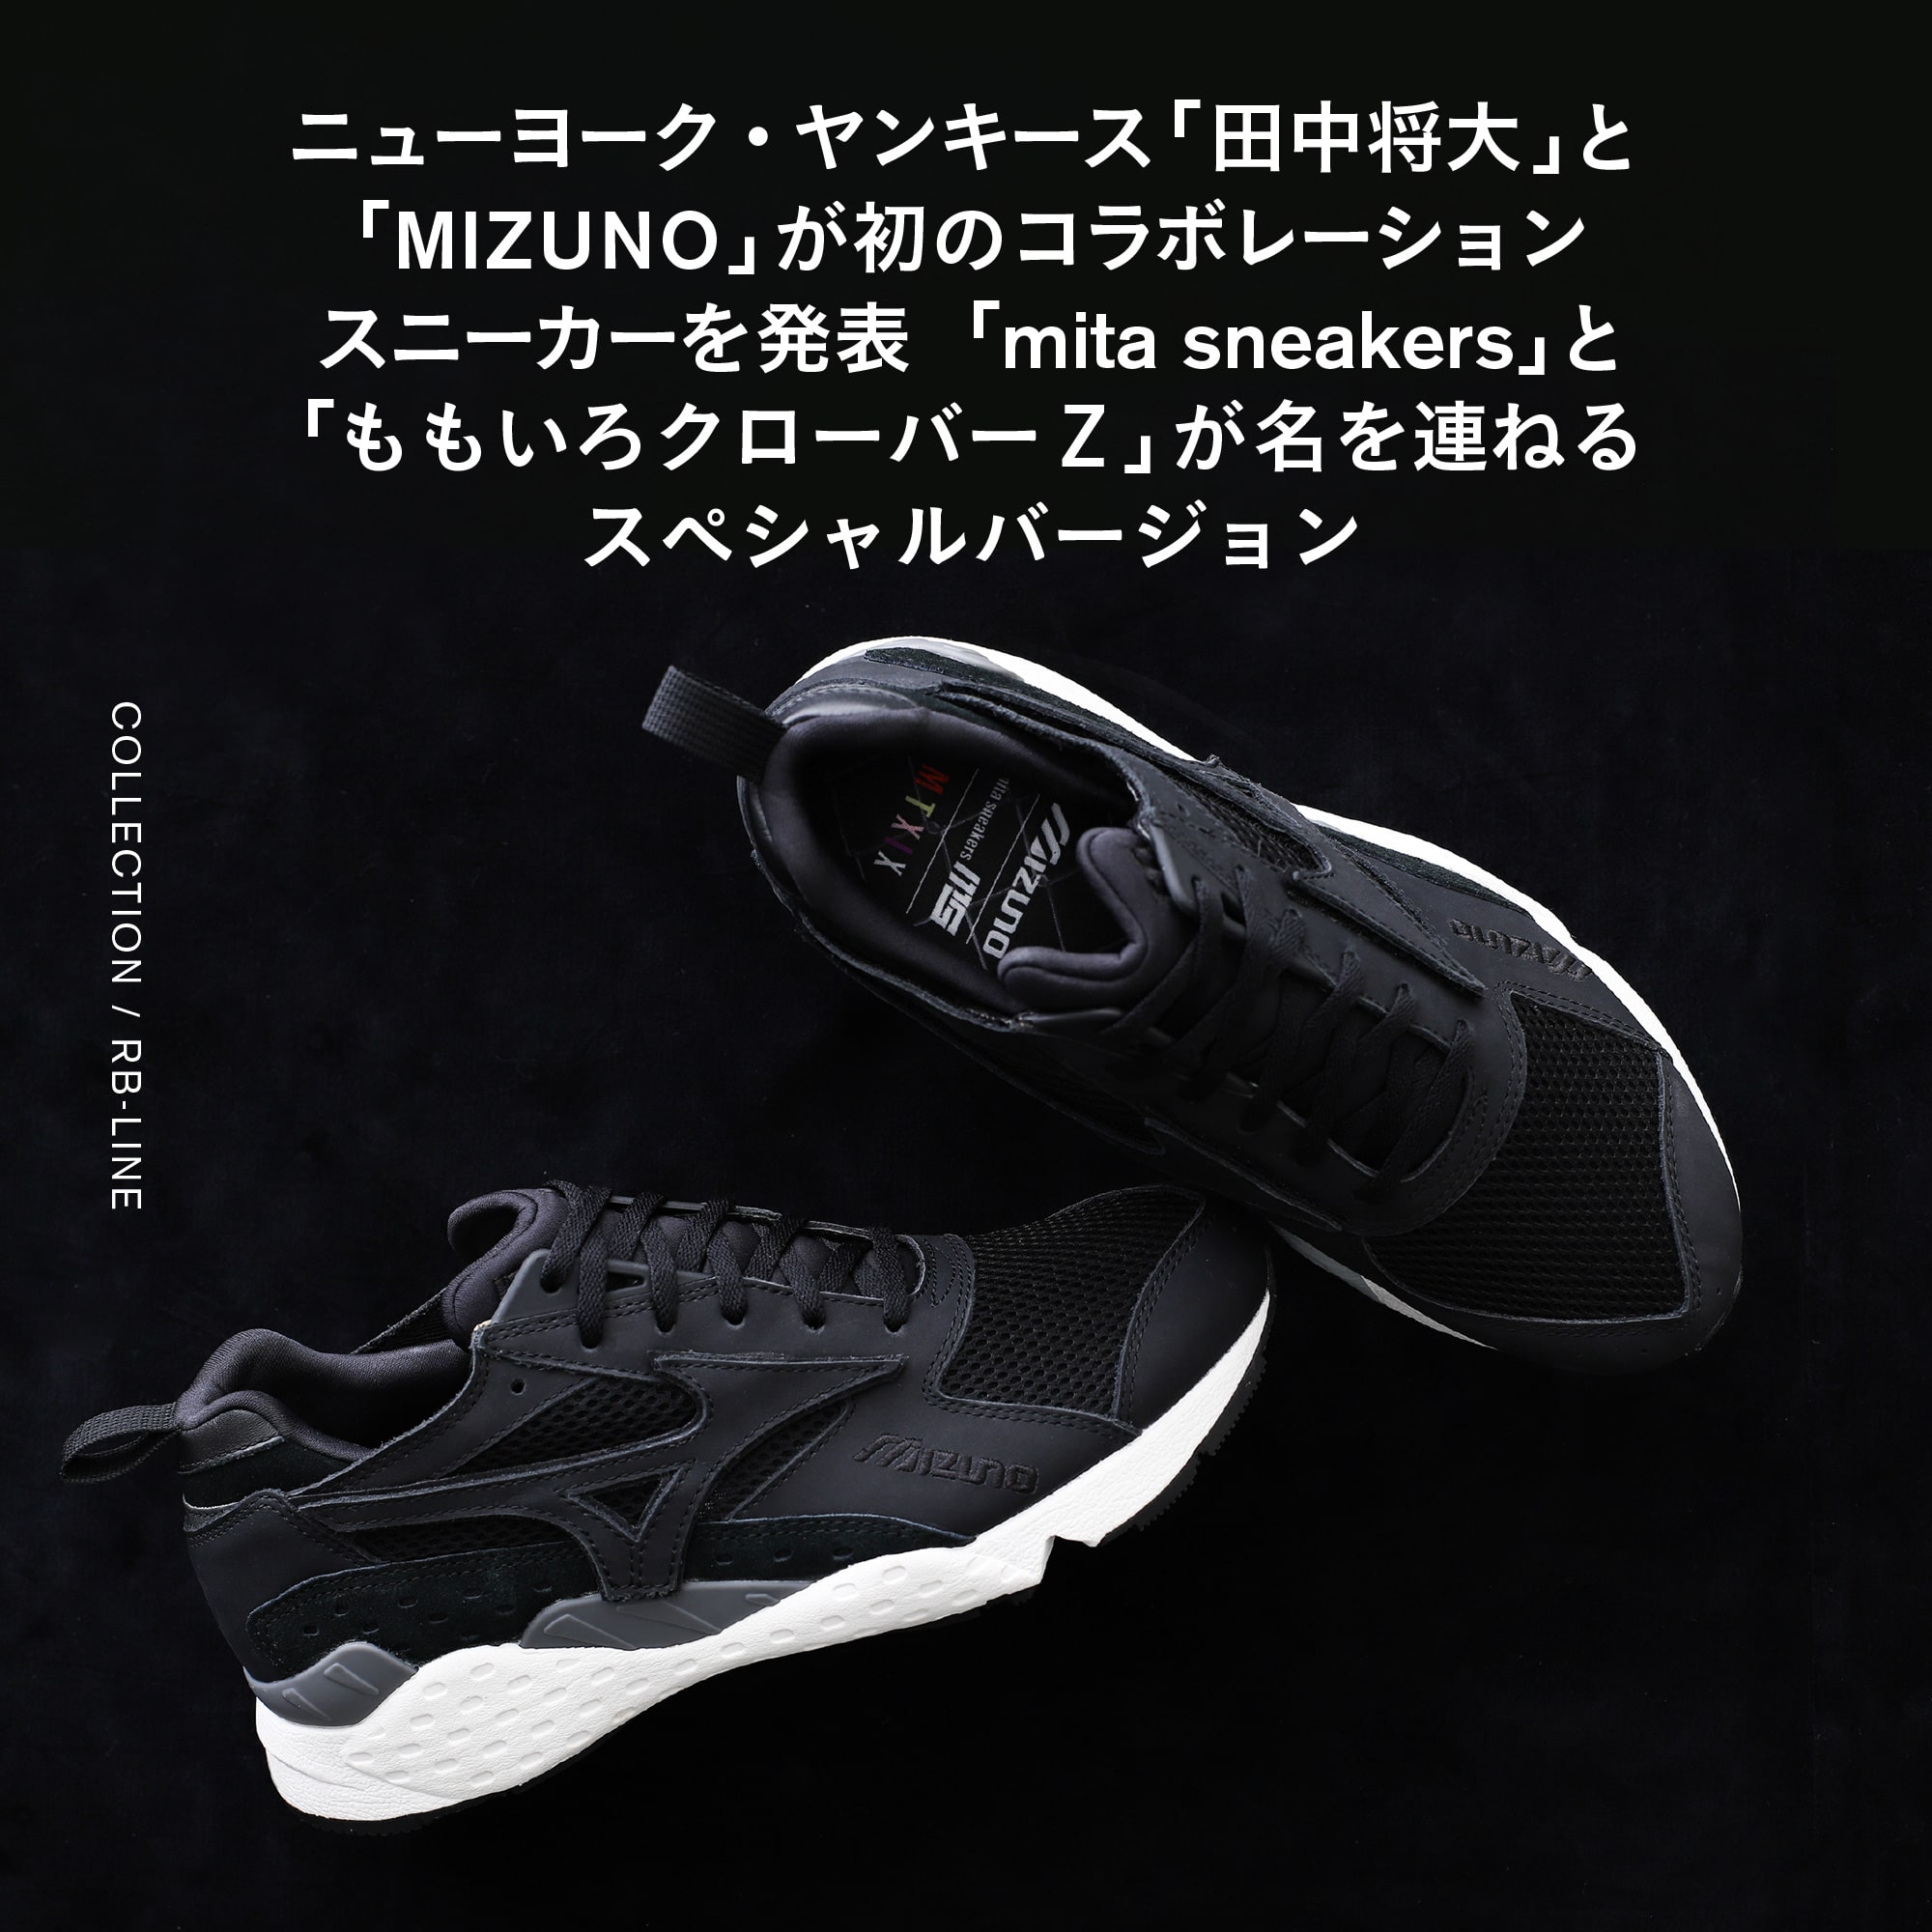 ニューヨーク・ヤンキース「田中将大」と「MIZUNO」が 初のコラボレーションスニーカーを発表「mita sneakers」と「ももいろクローバーＺ」が名を連ねるスペシャルバージョン